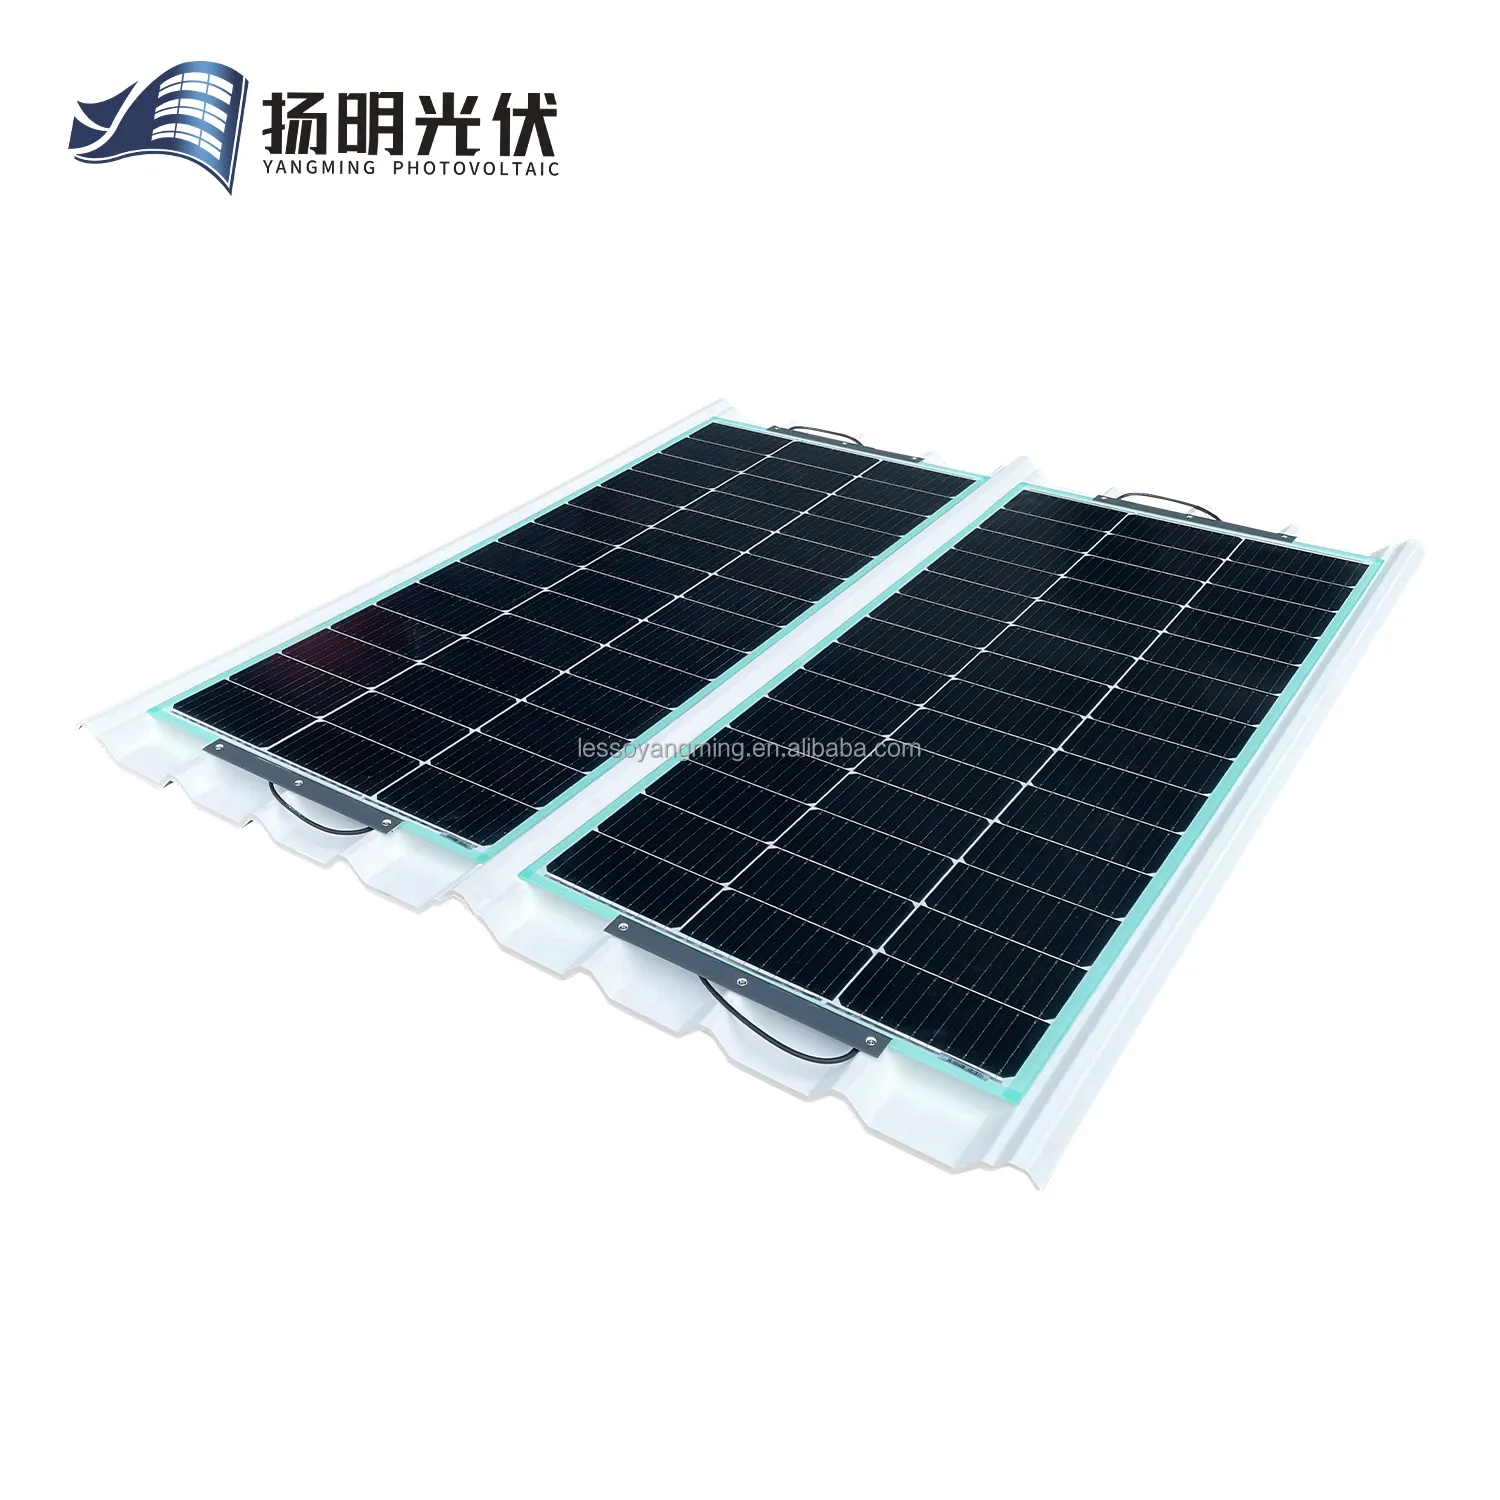 Lesso yangming bipv mái ngói năng lượng mặt trời 162W Sản phẩm năng lượng mặt trời bảng quang điện